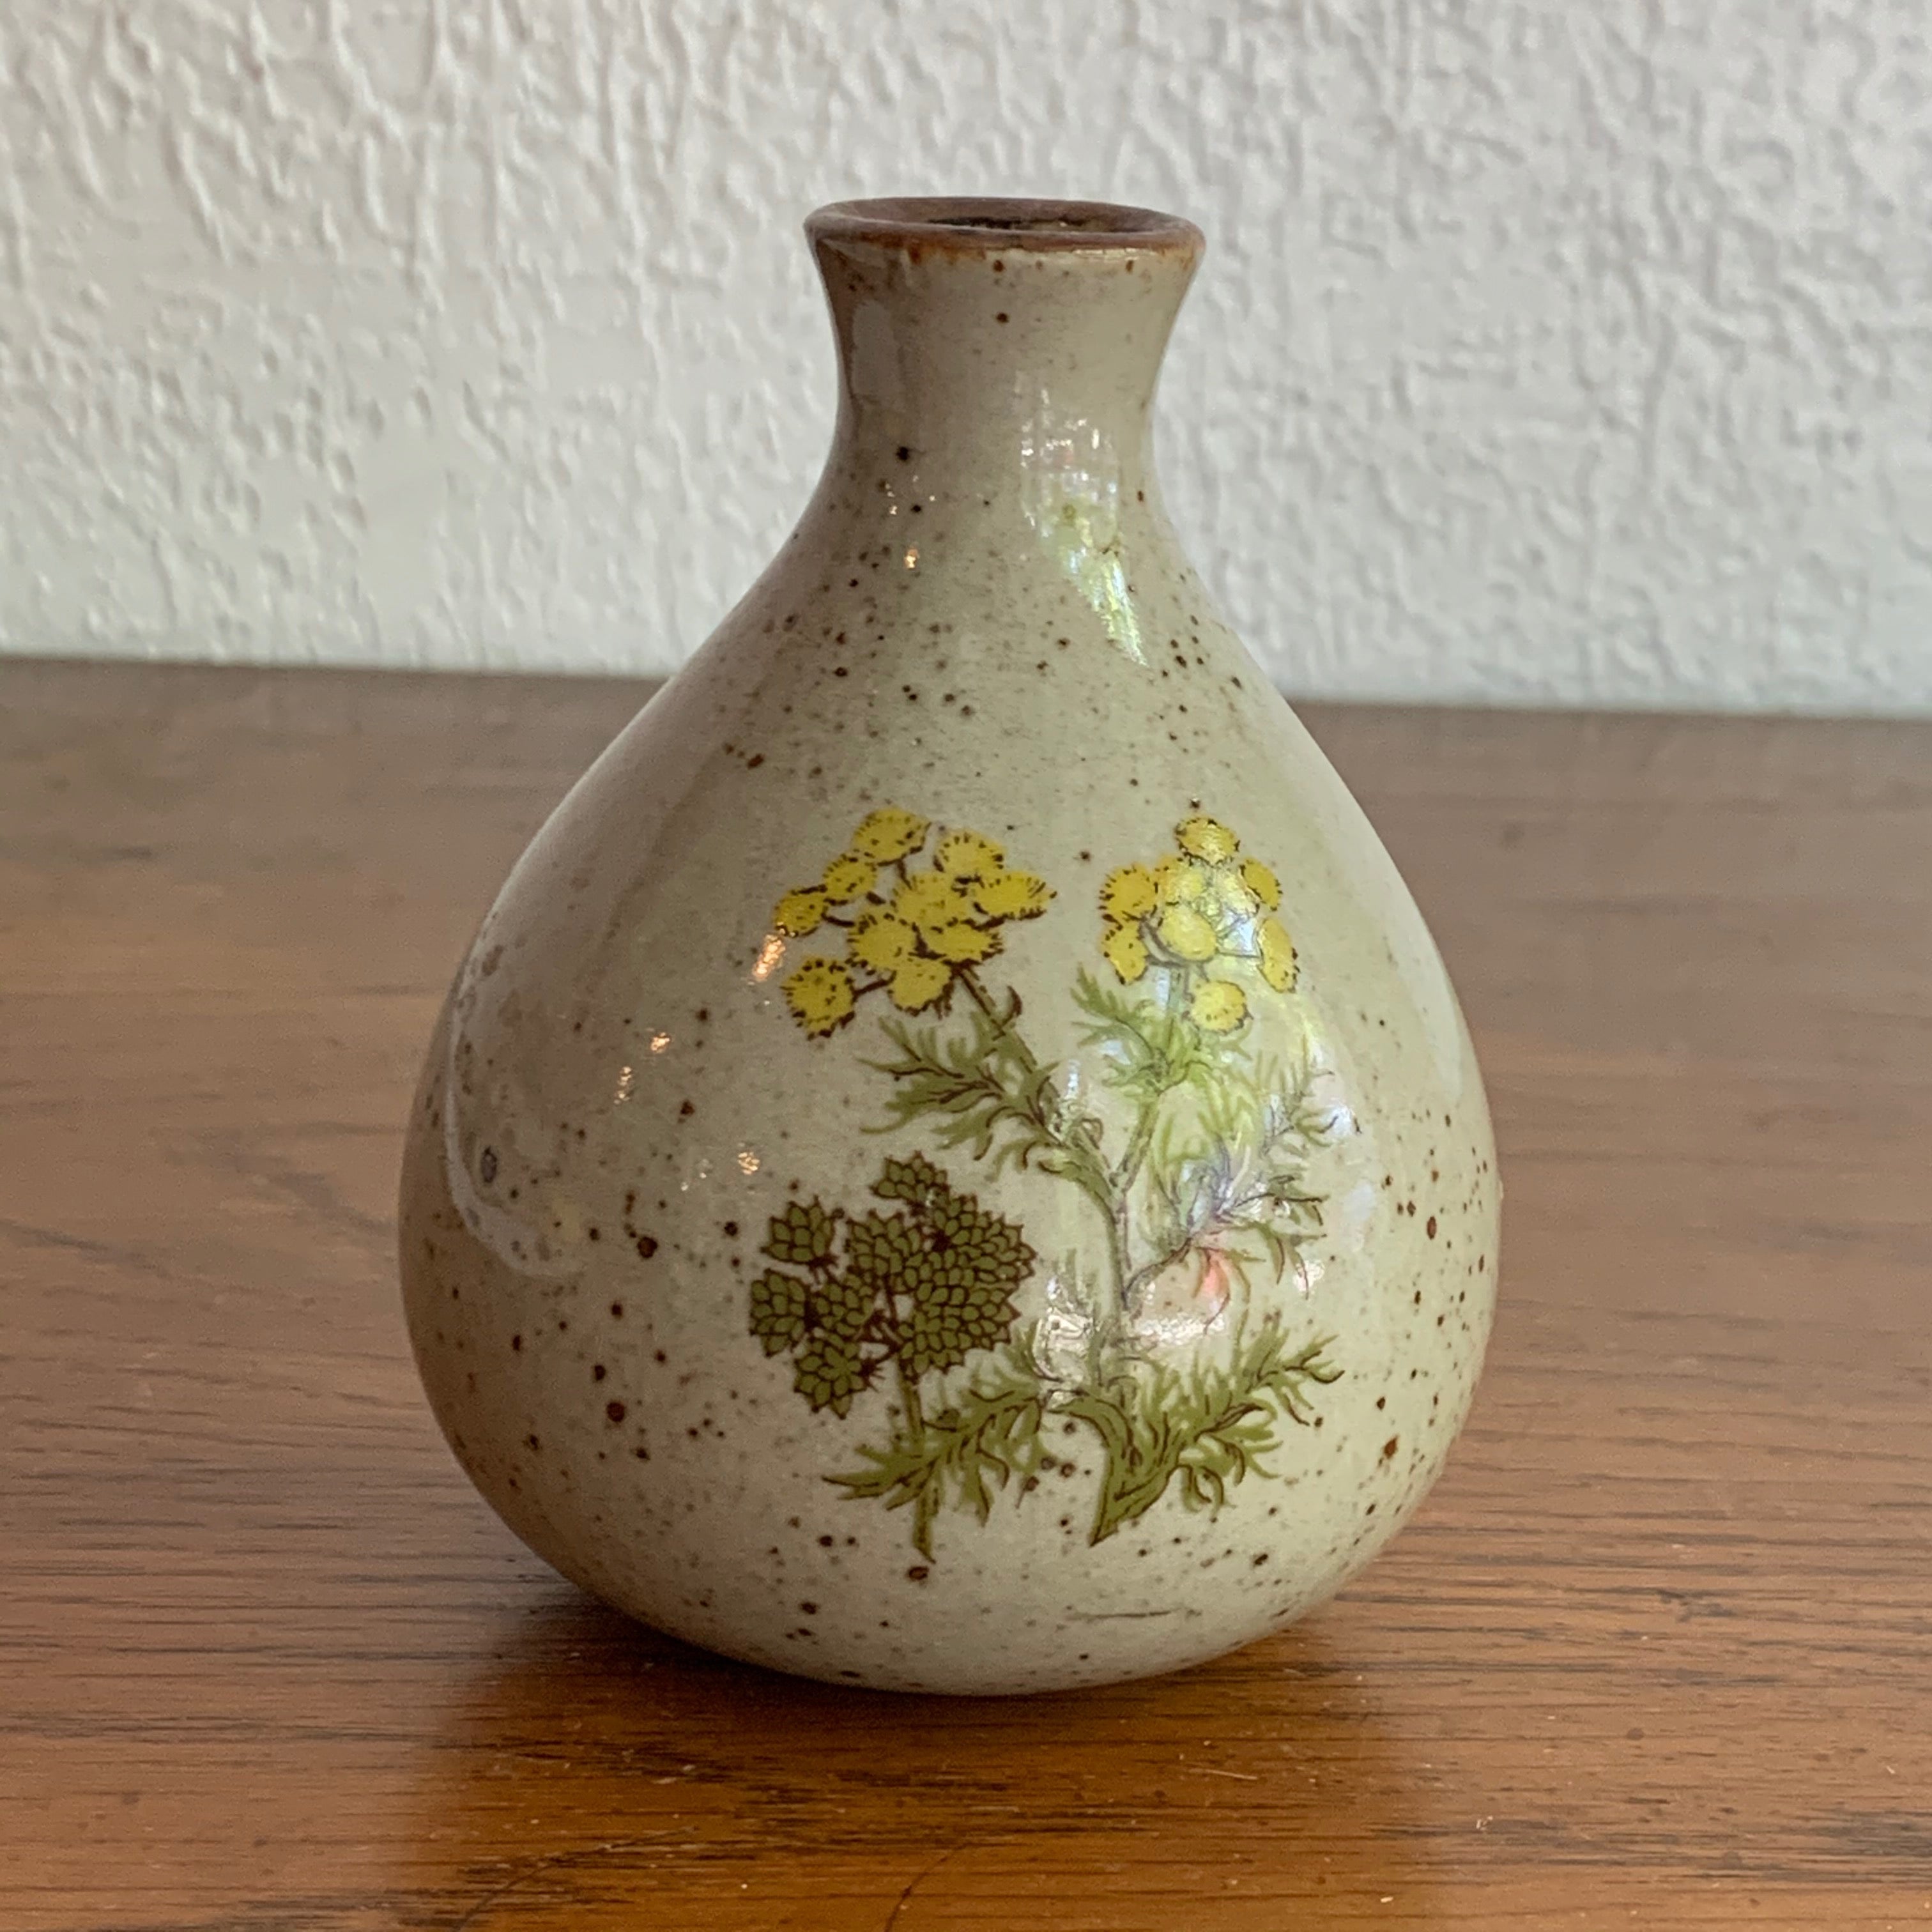 Vintage Find, Small Floral Vase